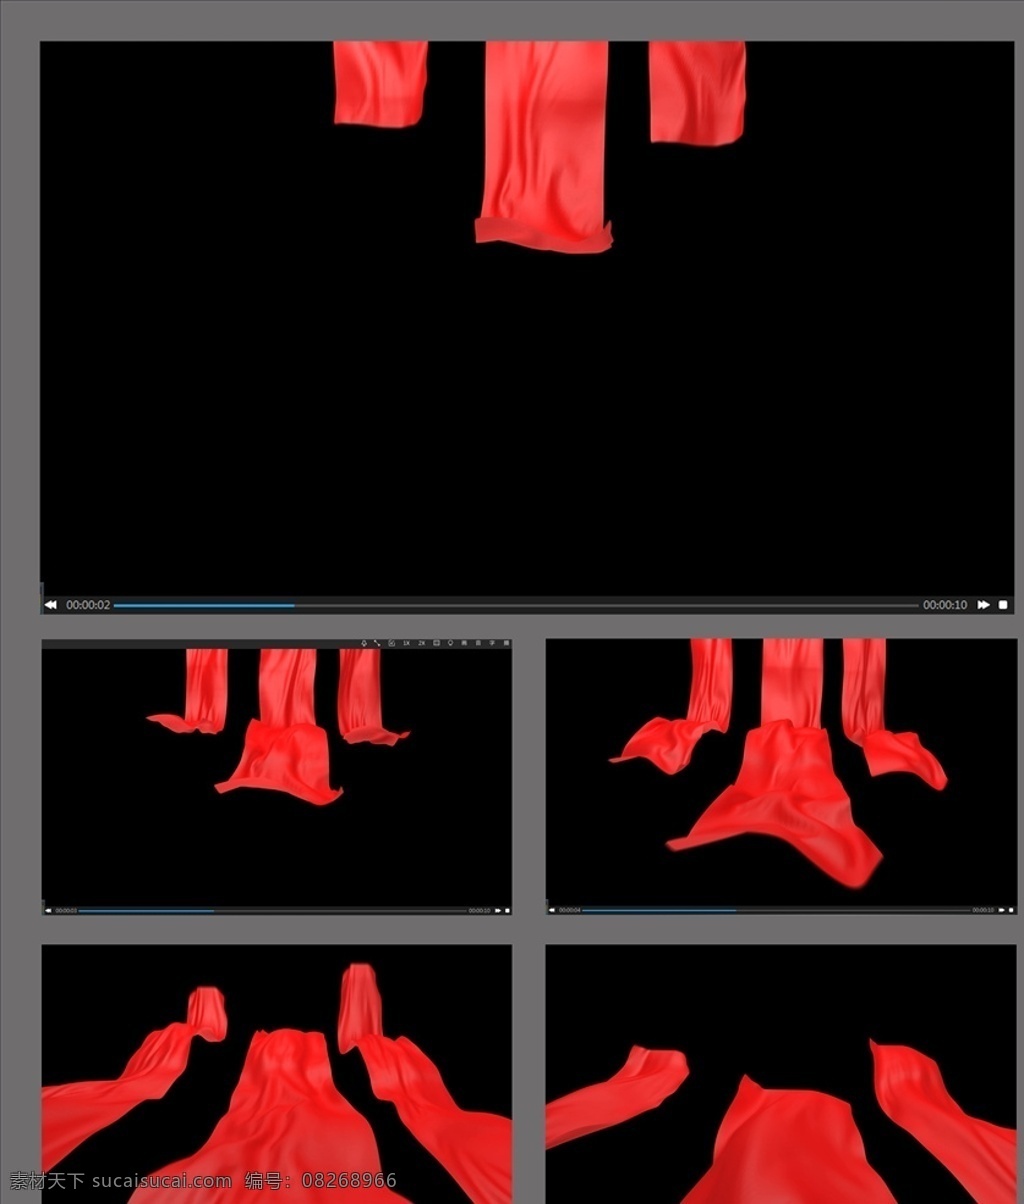 红 丝绸 飘动 转场 视频 红丝绸飘动 转场视频素材 丝绸动画 丝绸转场 转场素材 大红丝绸 多媒体 flash 动画 动画素材 mp4